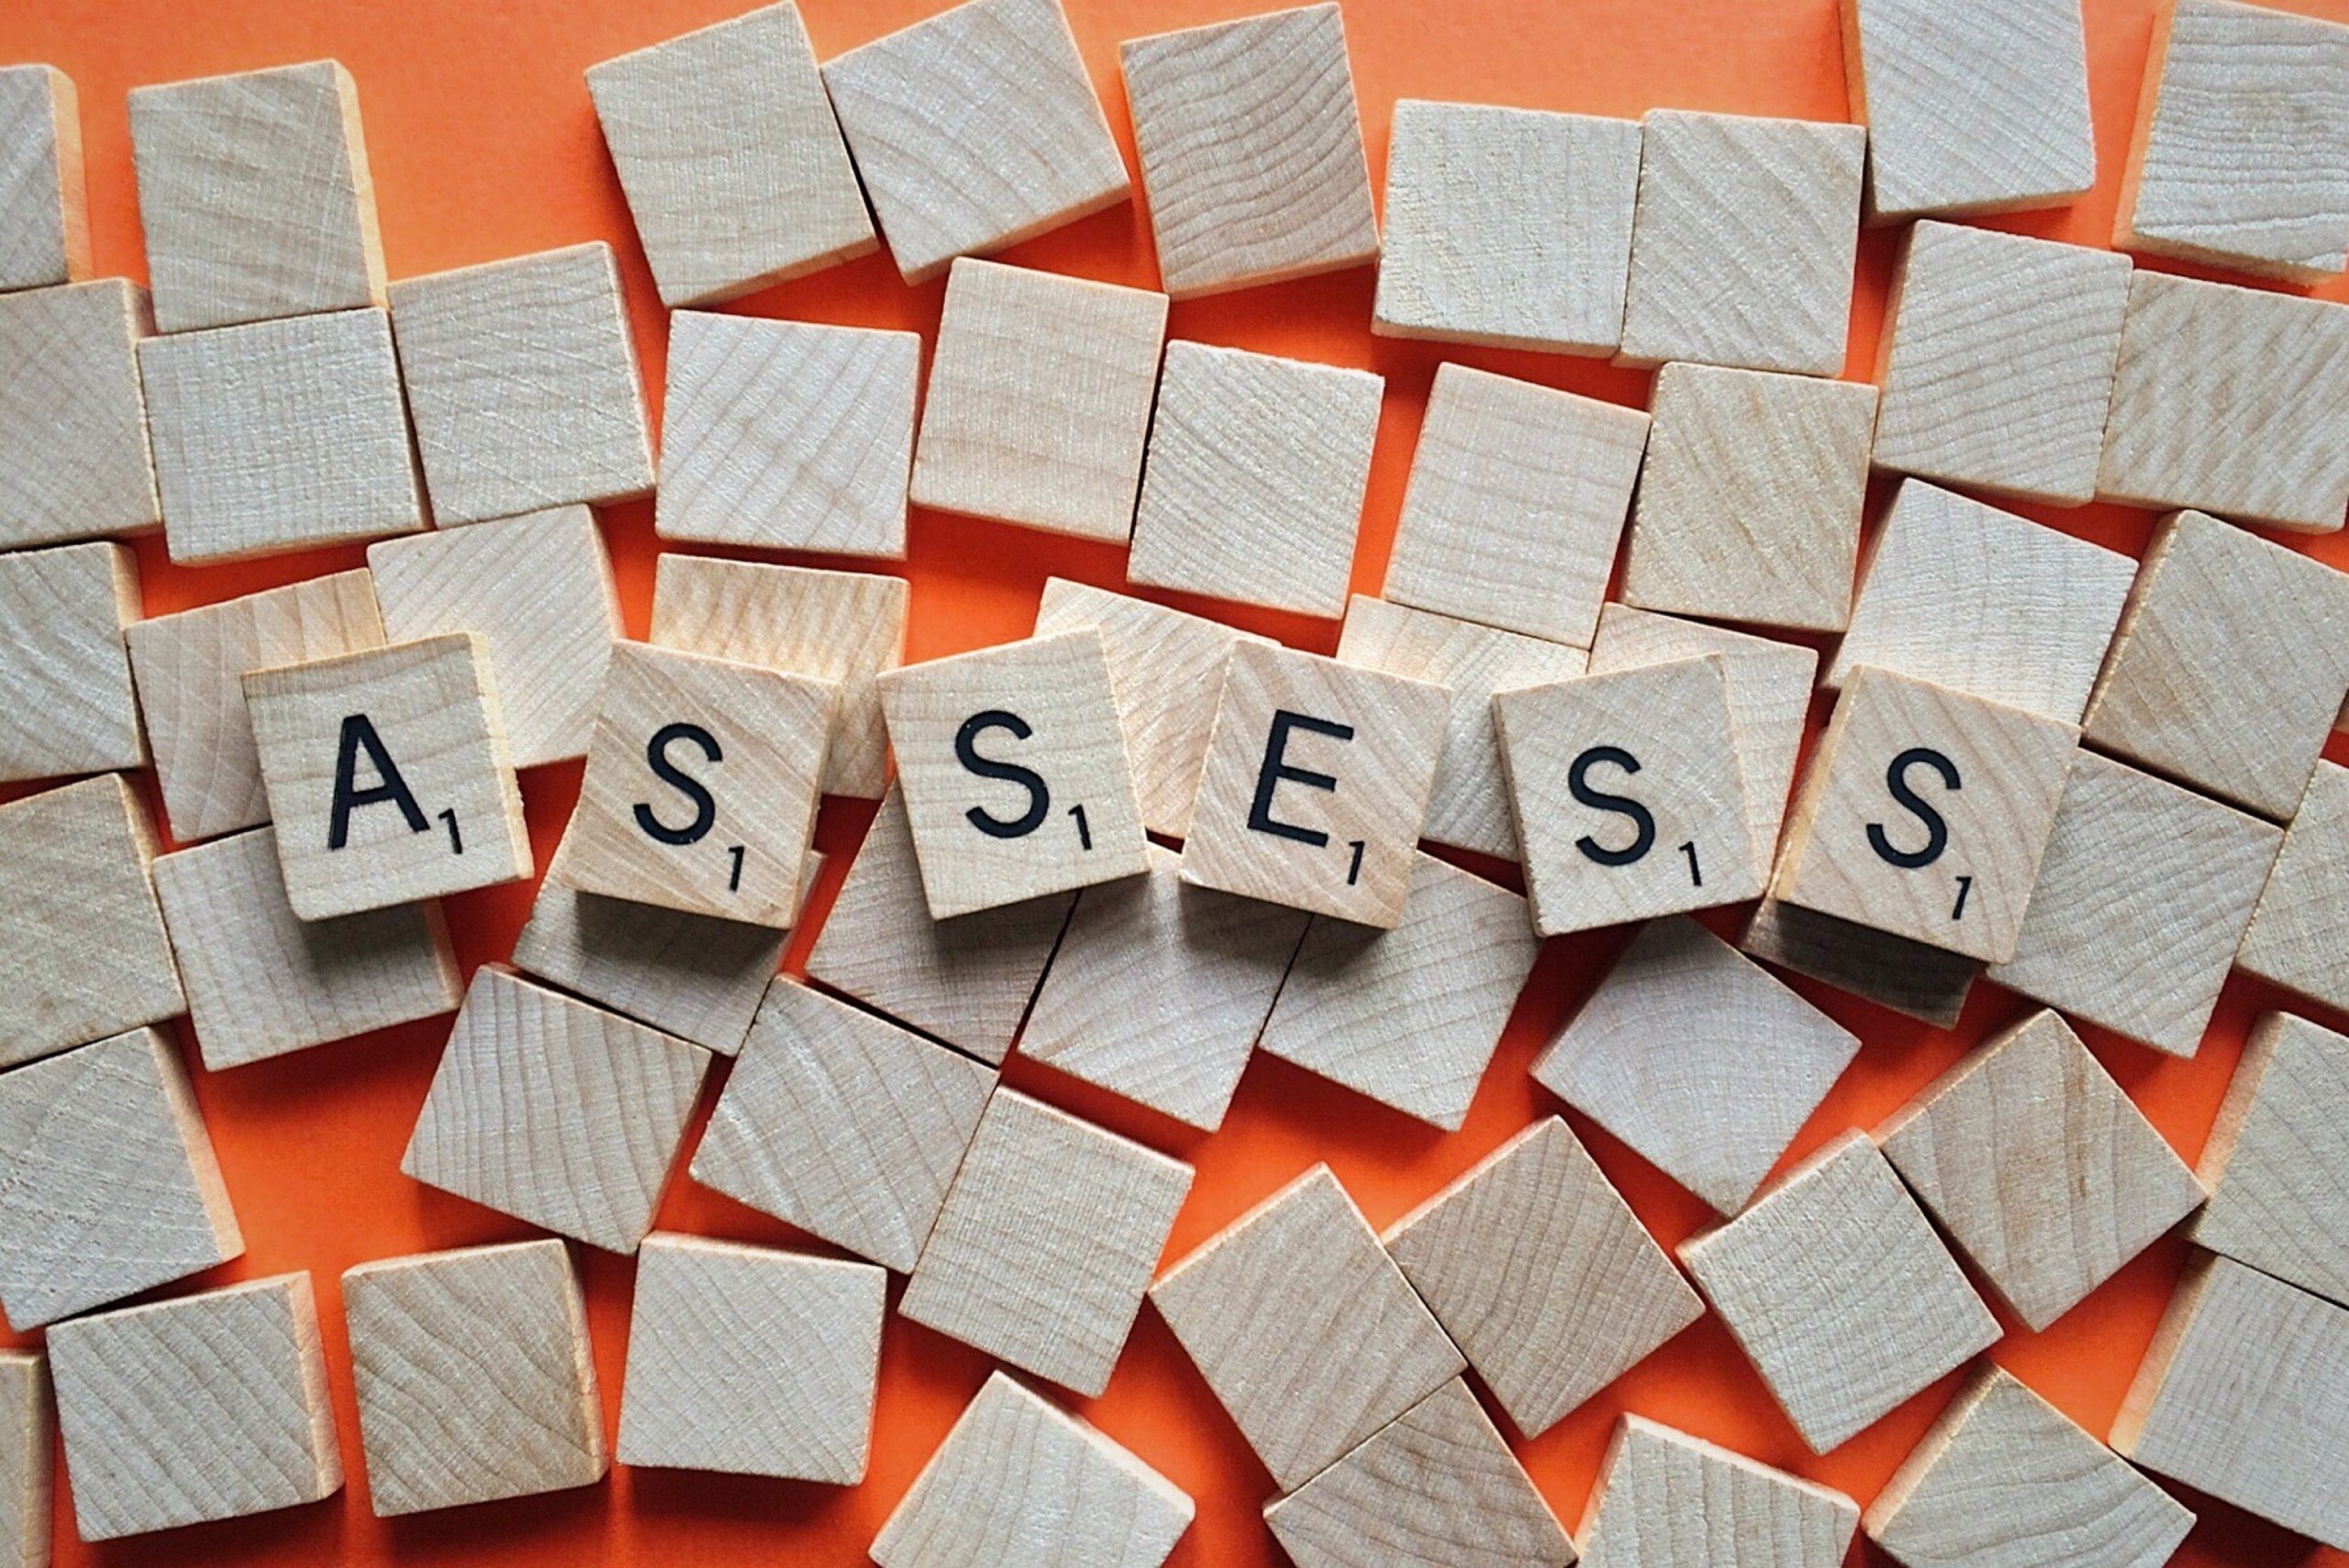 Scrabble tiles spelling "ASSESS".